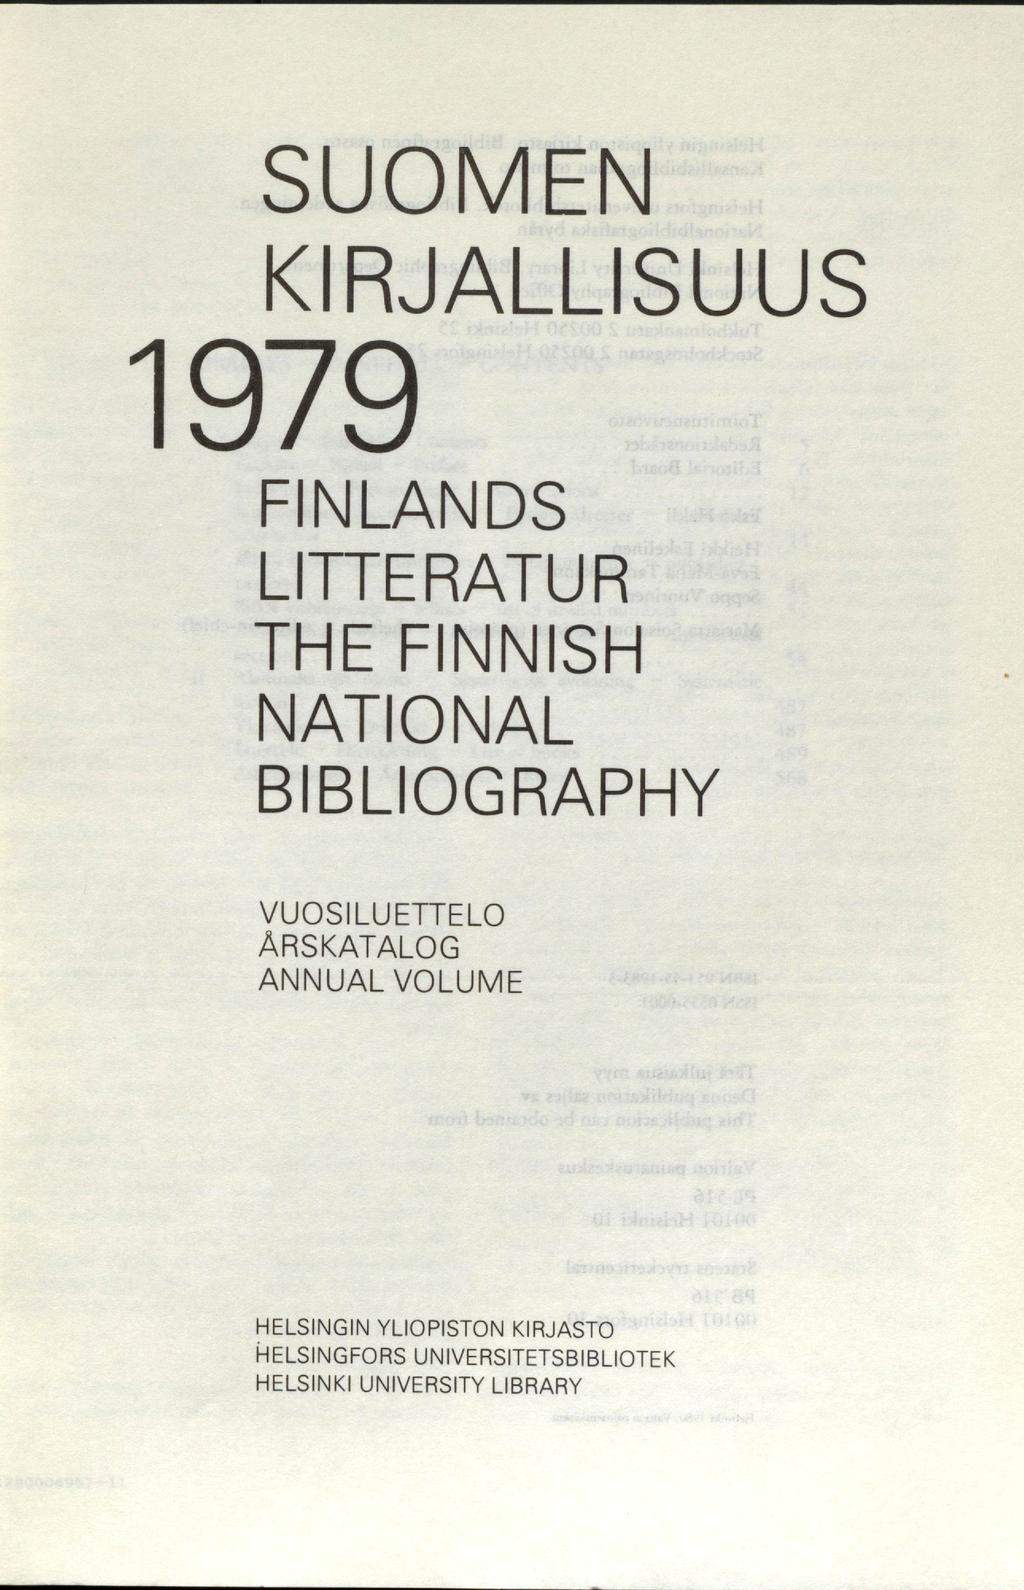 SUOMEN KIRJALLISUUS 1979 FINLANDS LITTERATUR THE FINNISH NATIONAL BIBLIOGRAPHY VUOSI LUETTELO ARSKATALOG